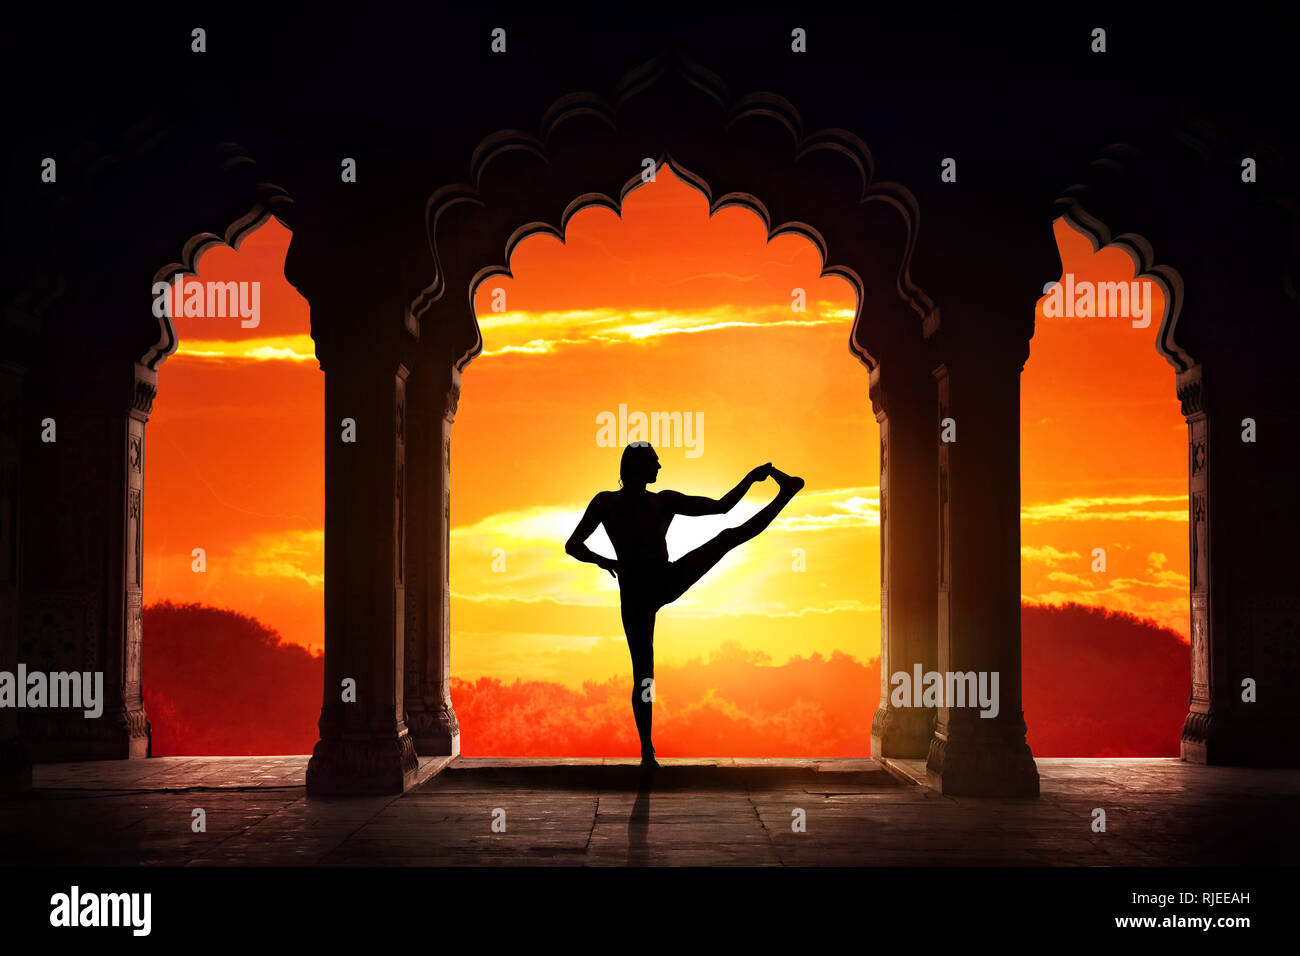 Silhouette Homme faisant du yoga équilibre avance asana dans vieux temple au fond de ciel coucher de soleil orange Banque D'Images